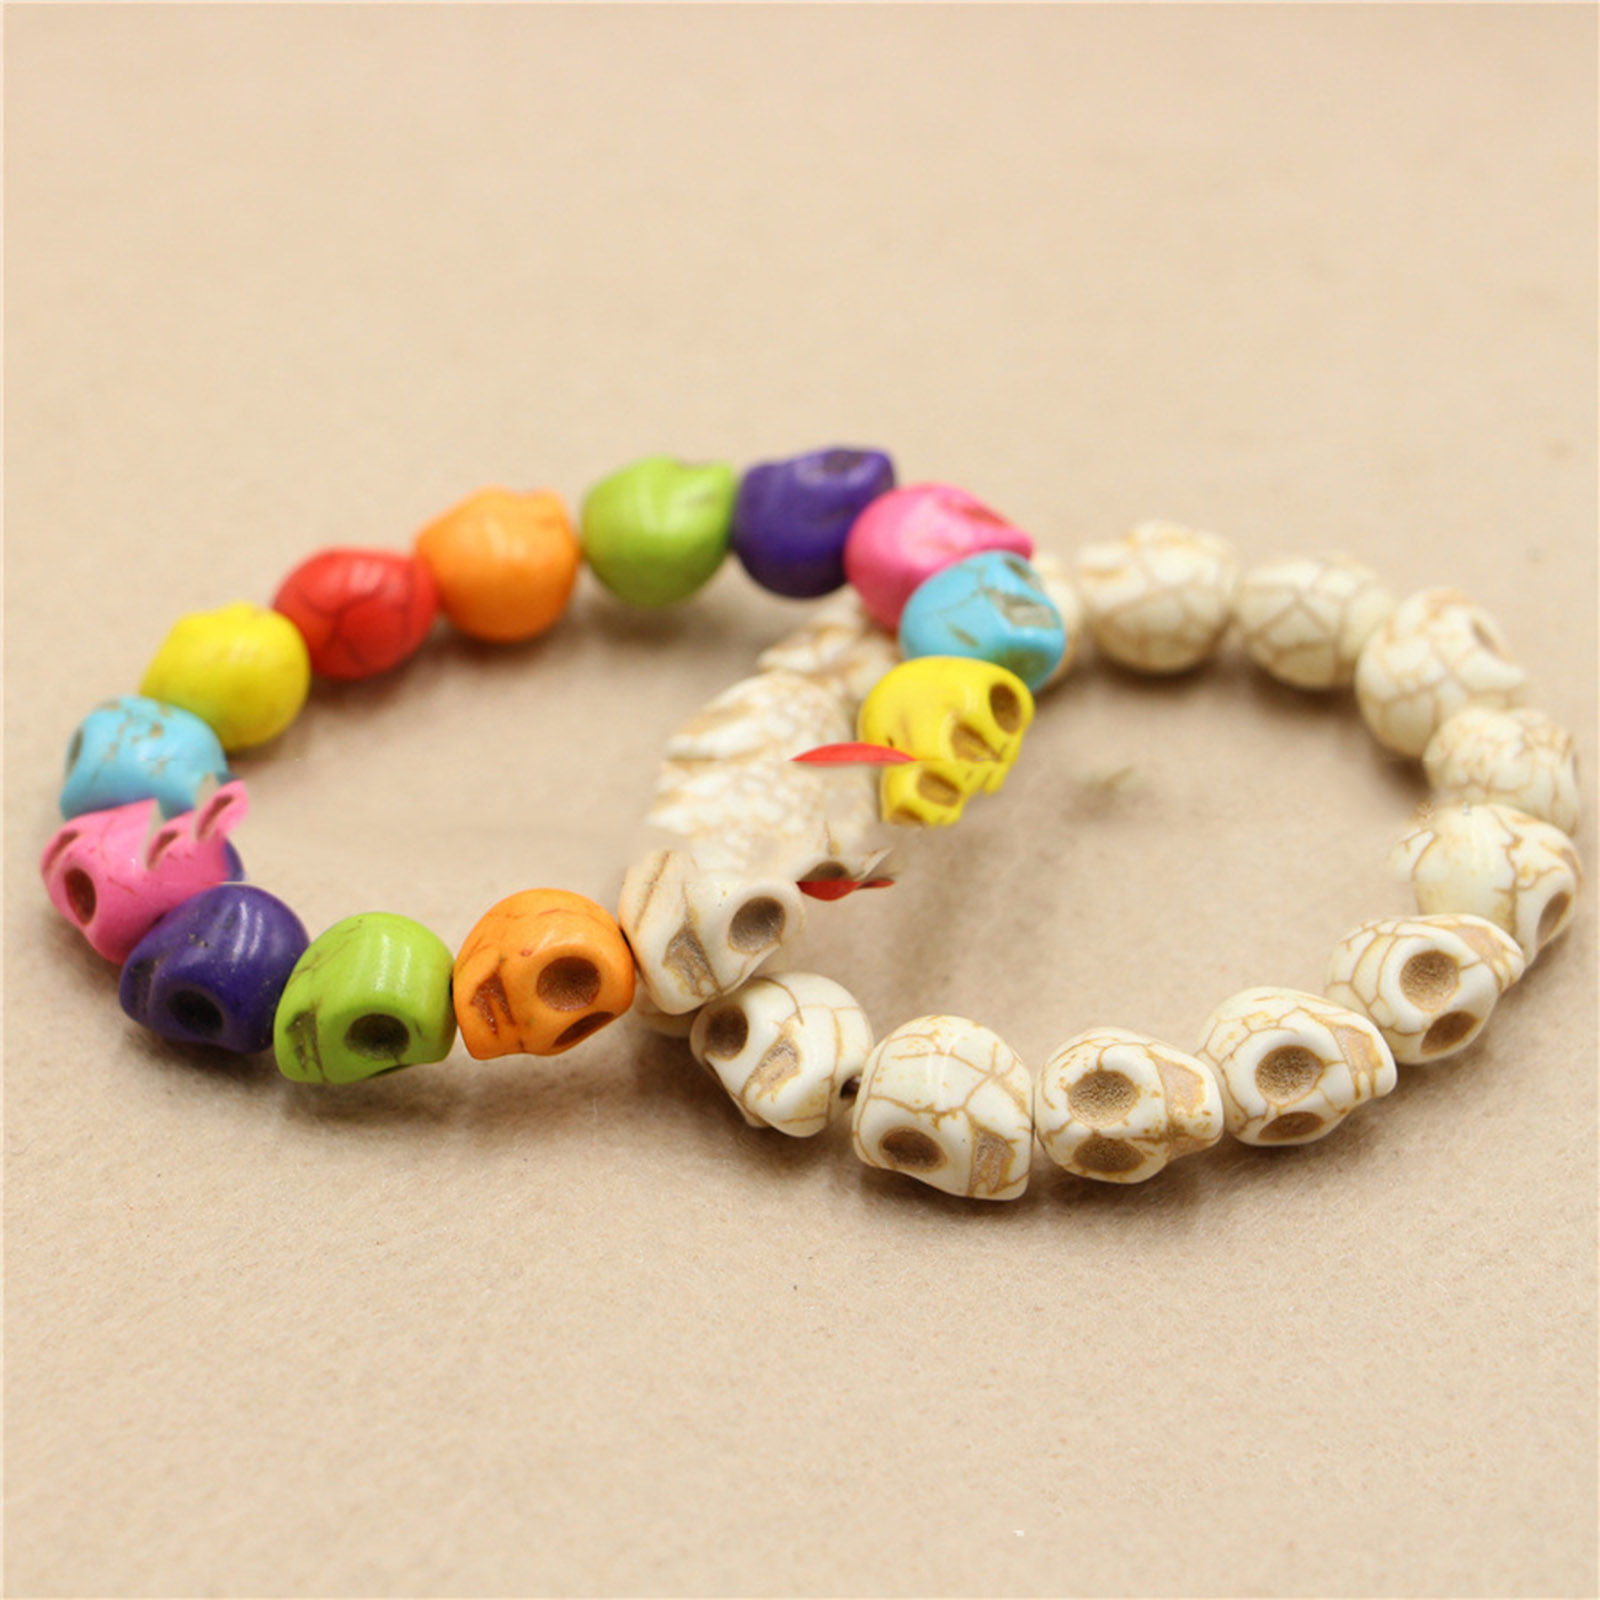 Immagine di Sintetico Turchese Halloween Bracciali Delicato bracciali delicate braccialetto in rilievo Multicolore Cranio Elastico 18cm Lunghezza, 1 Pz